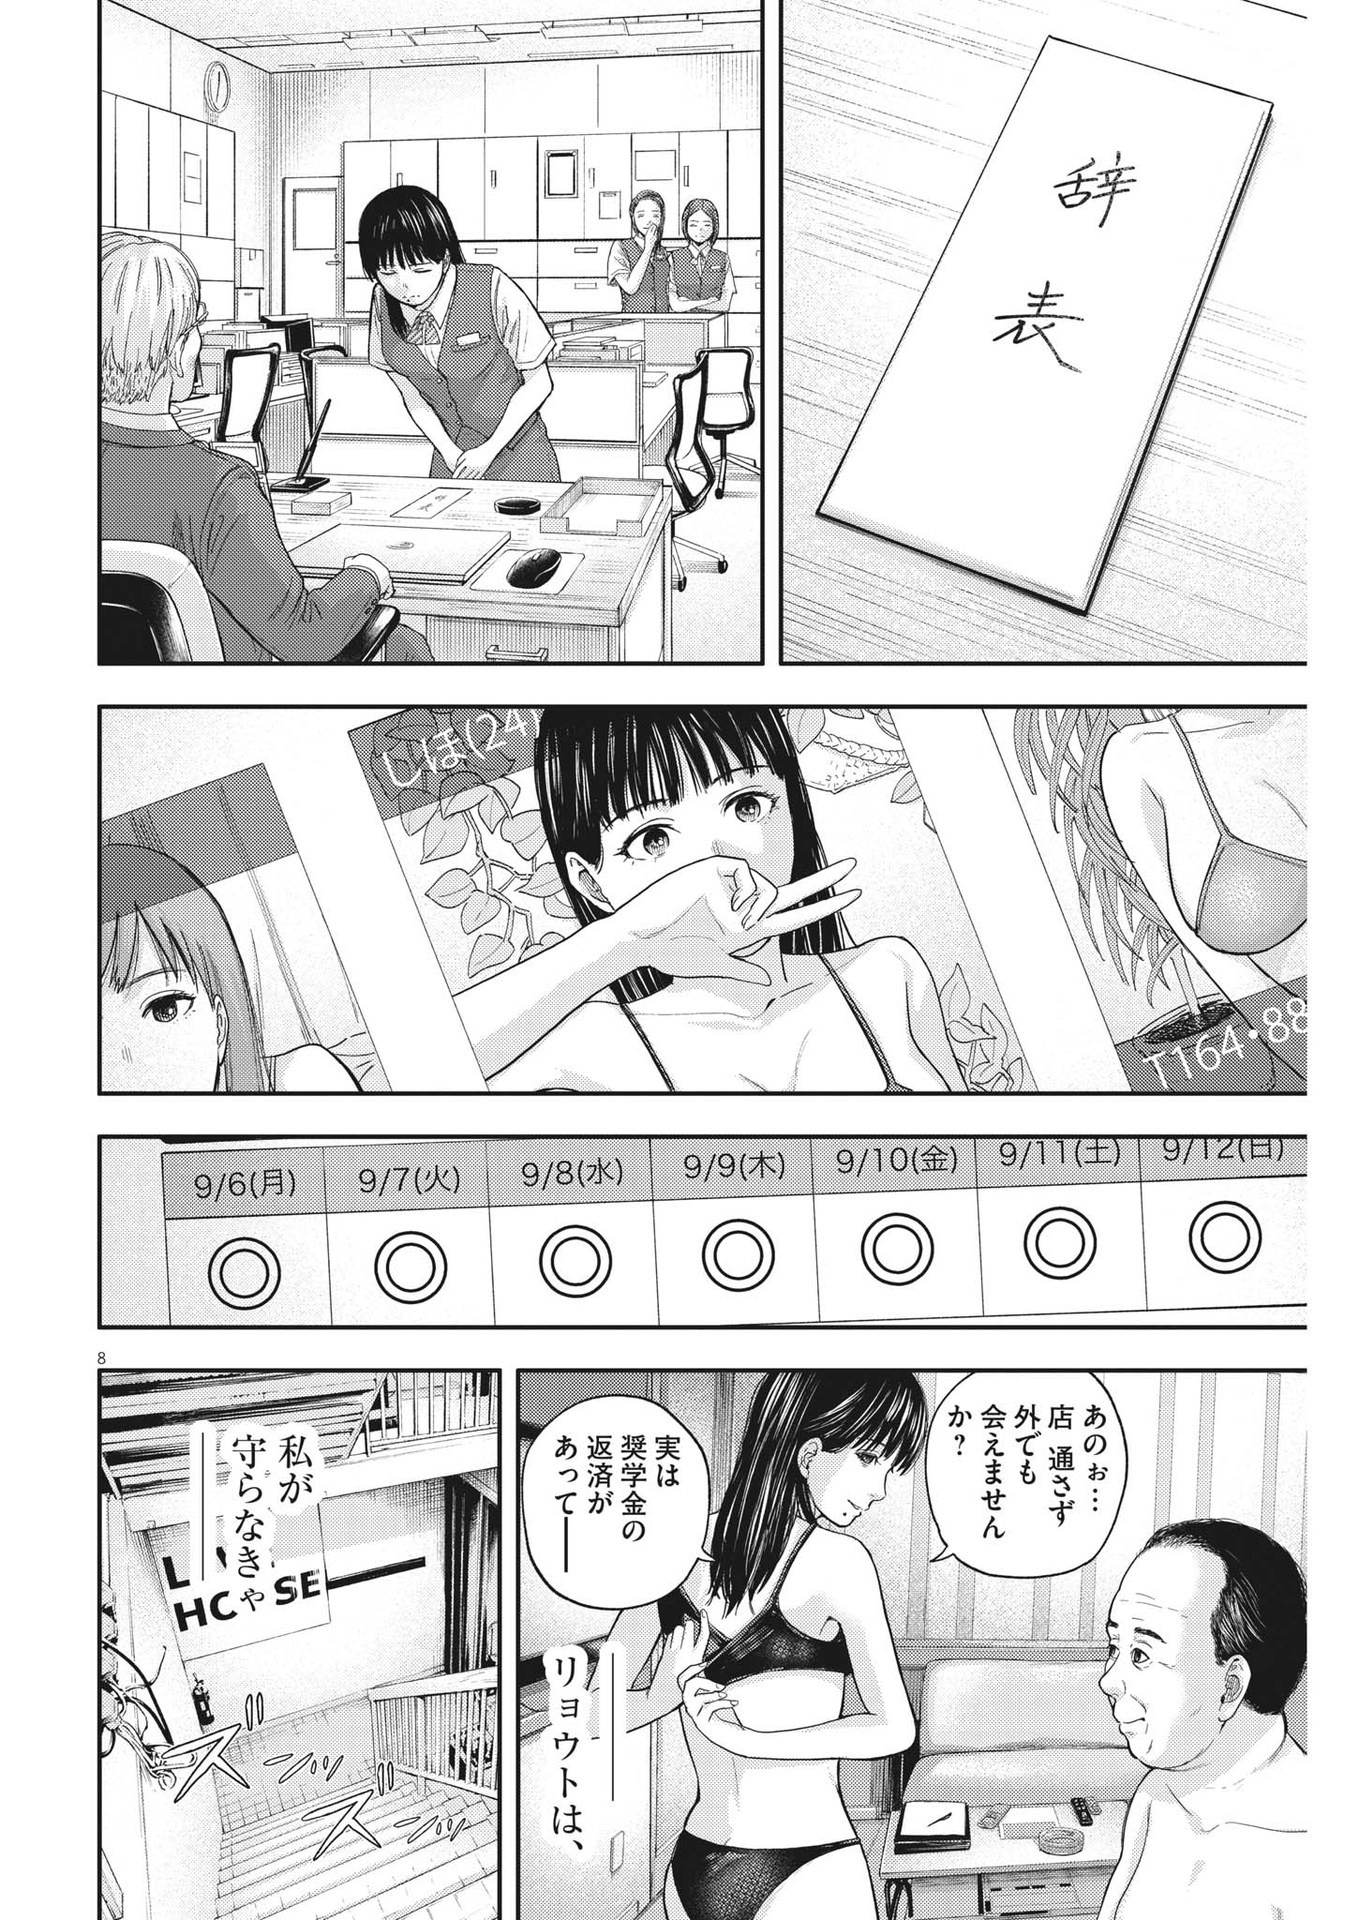 Yumenashi-sensei no Shinroshidou - Chapter 15 - Page 8